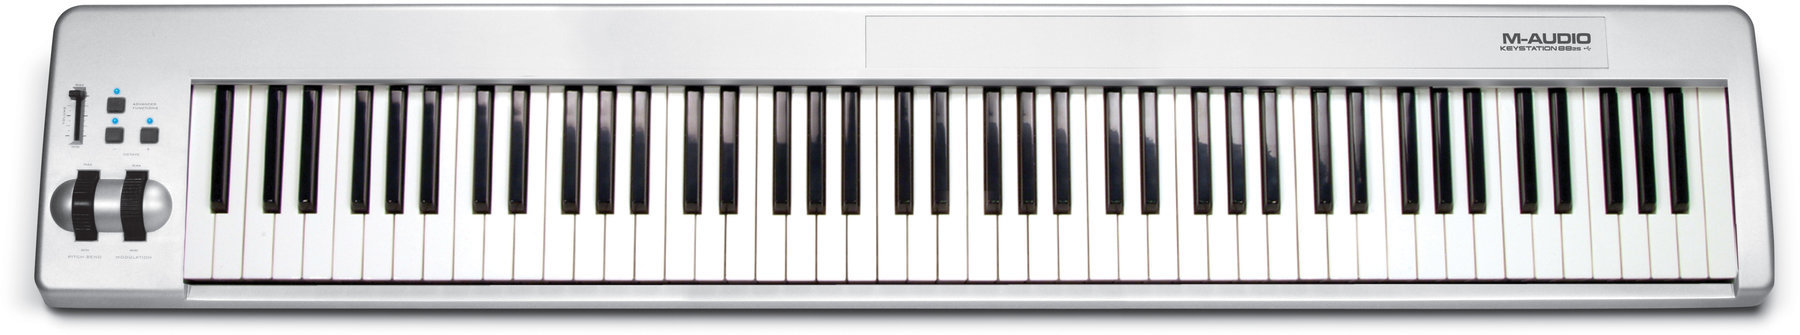 MIDI-Keyboard M-Audio Keystation 88 es